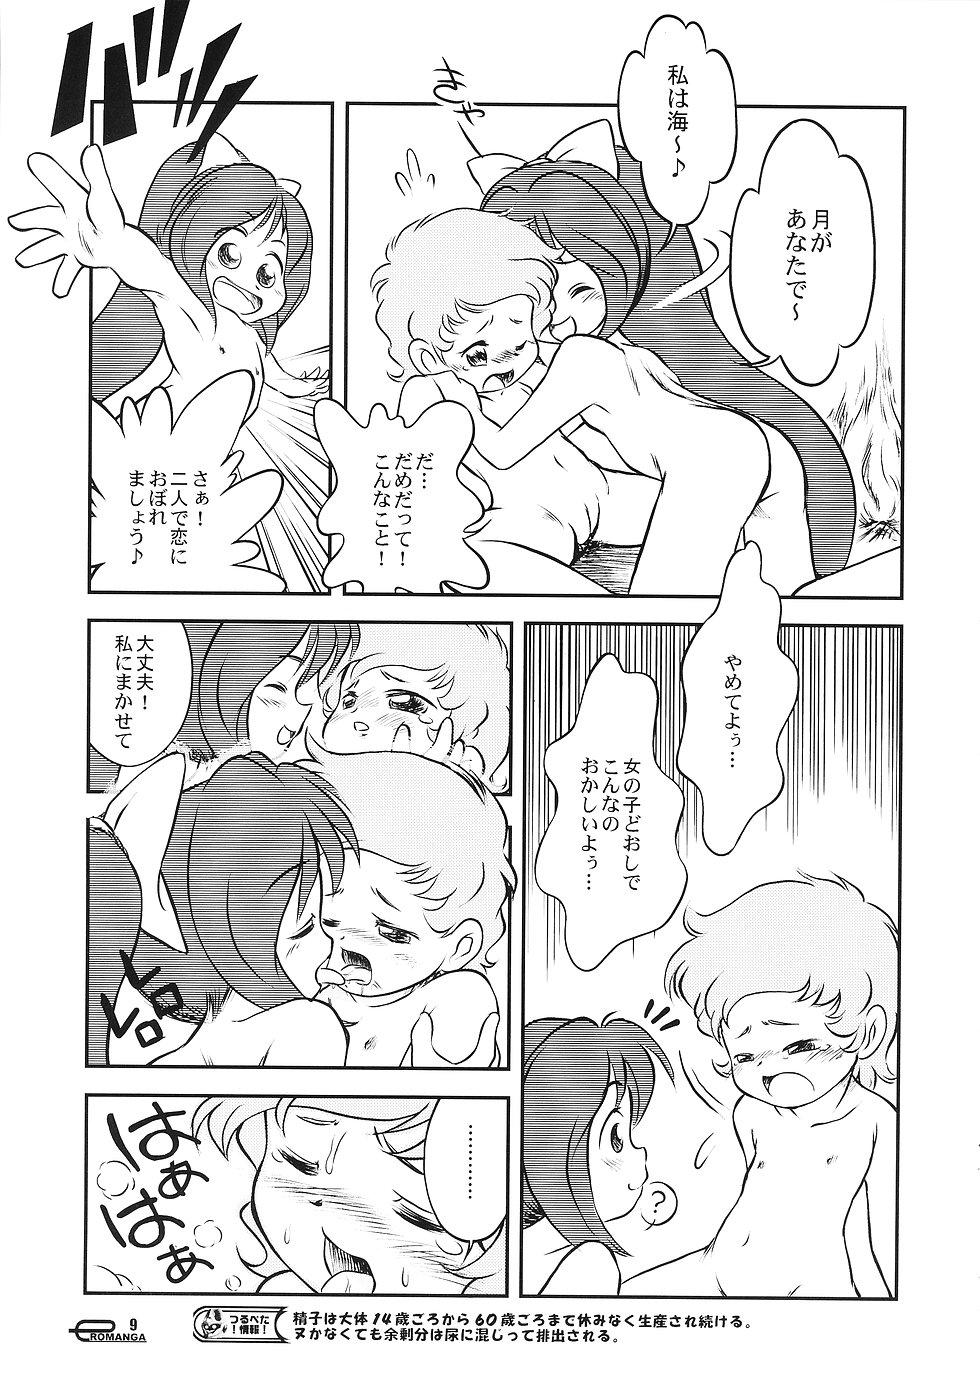 Foot Worship Manga Science 3 - Sou Nanda! Nut - Page 8